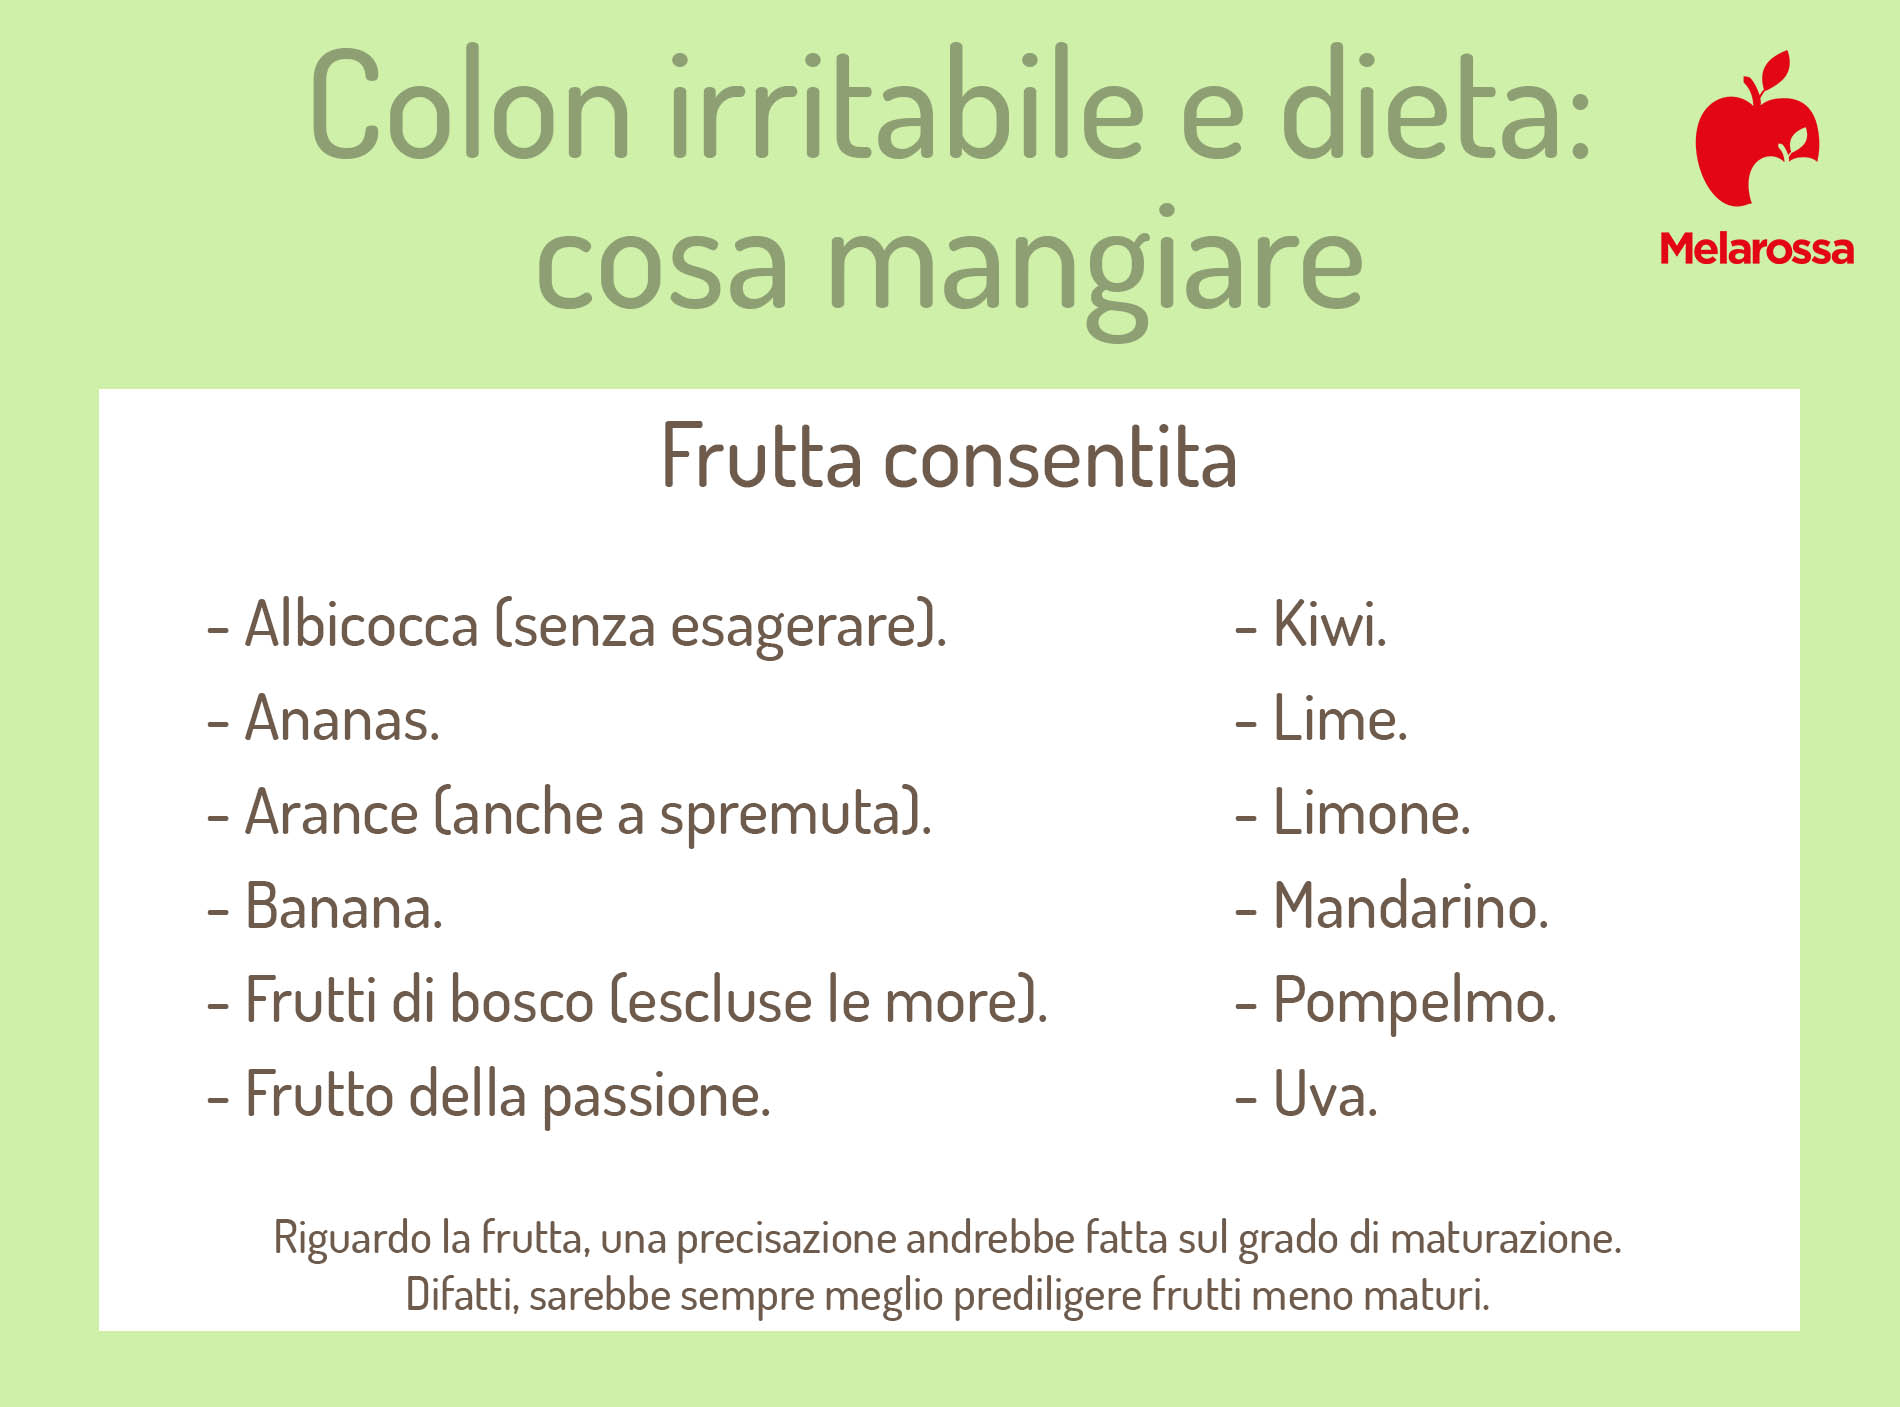 dieta per colon irritabile: frutta consentita 